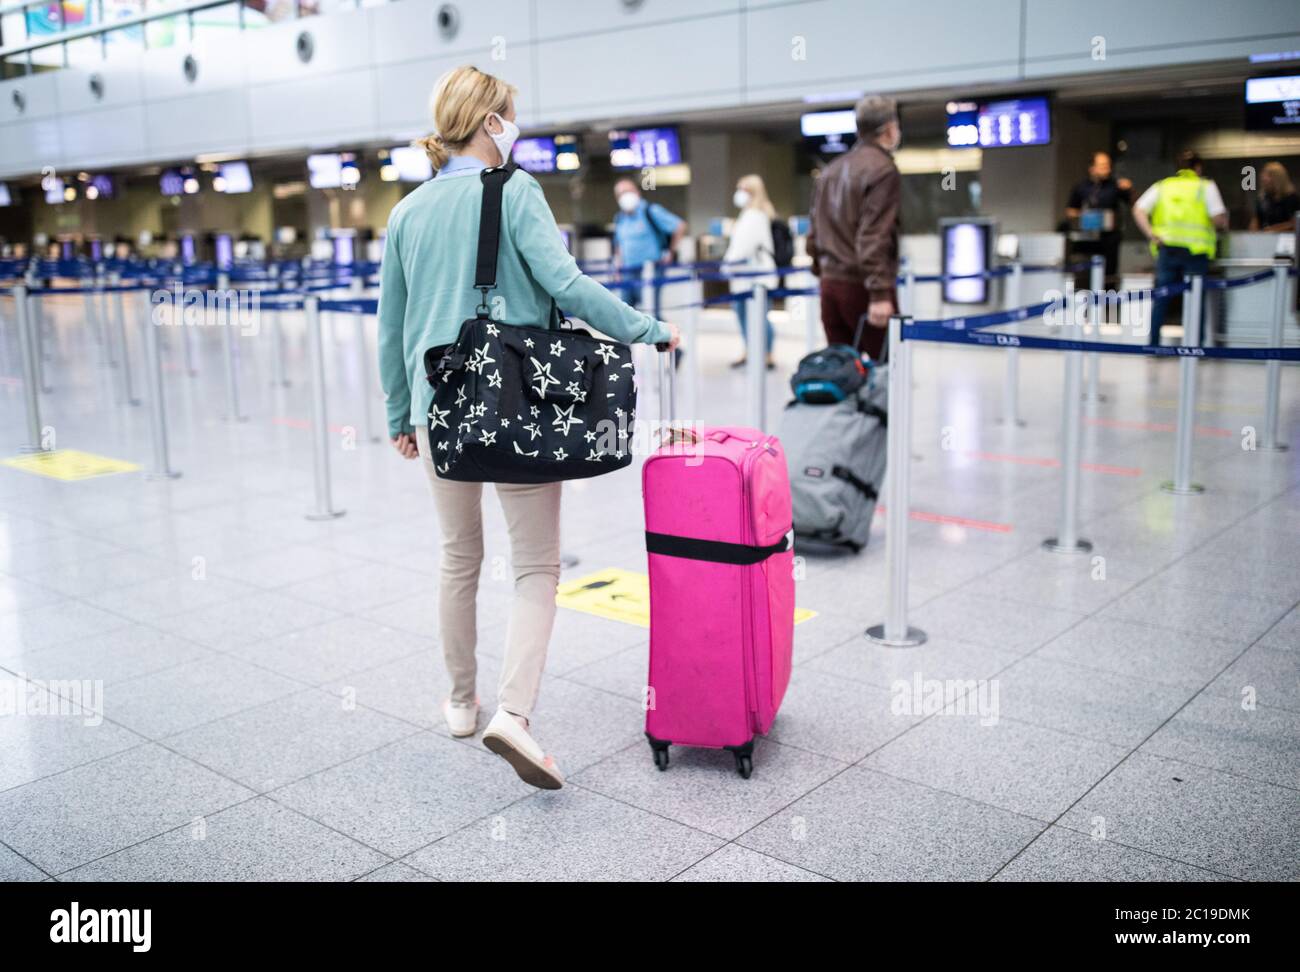 Düsseldorf, Deutschland. Juni 2020. Reisende auf Mallorca gehen an einen  Check-in-Schalter am Flughafen Düsseldorf. Nachdem die Reisewarnung für 27  europäische Länder in der Nacht auf Montag (15.06.2020) aufgehoben wurde,  ist heute Morgen